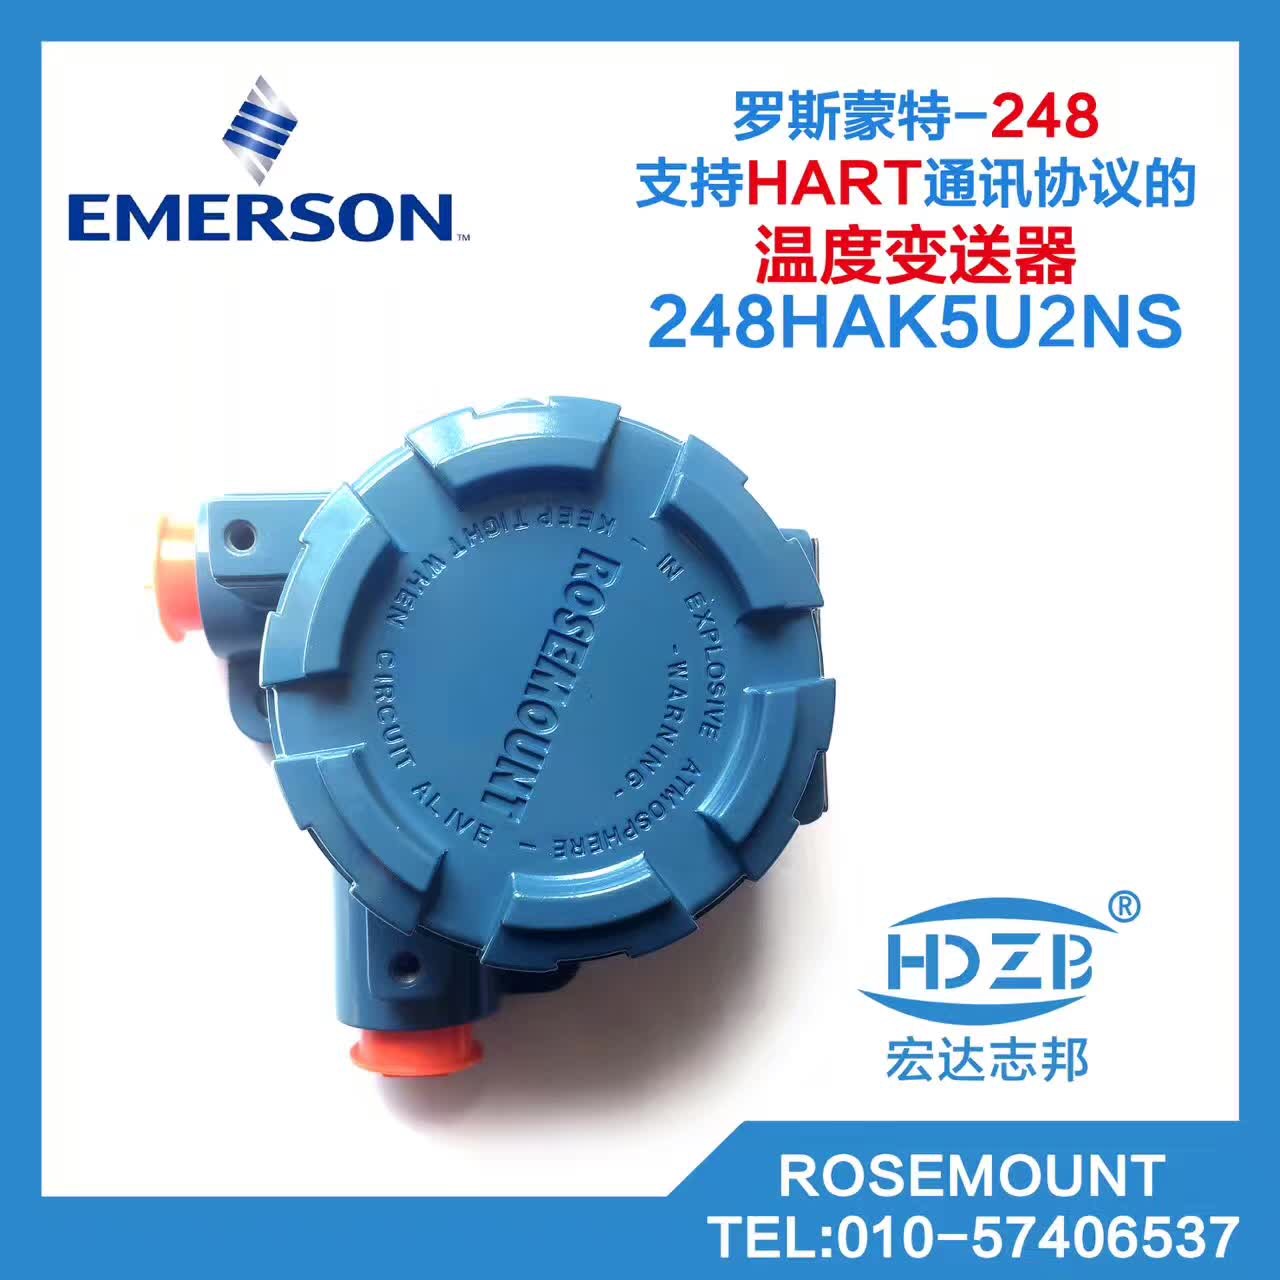 罗斯蒙特248H温度变送器原装产品现货，支持货到付款。13552009635图片